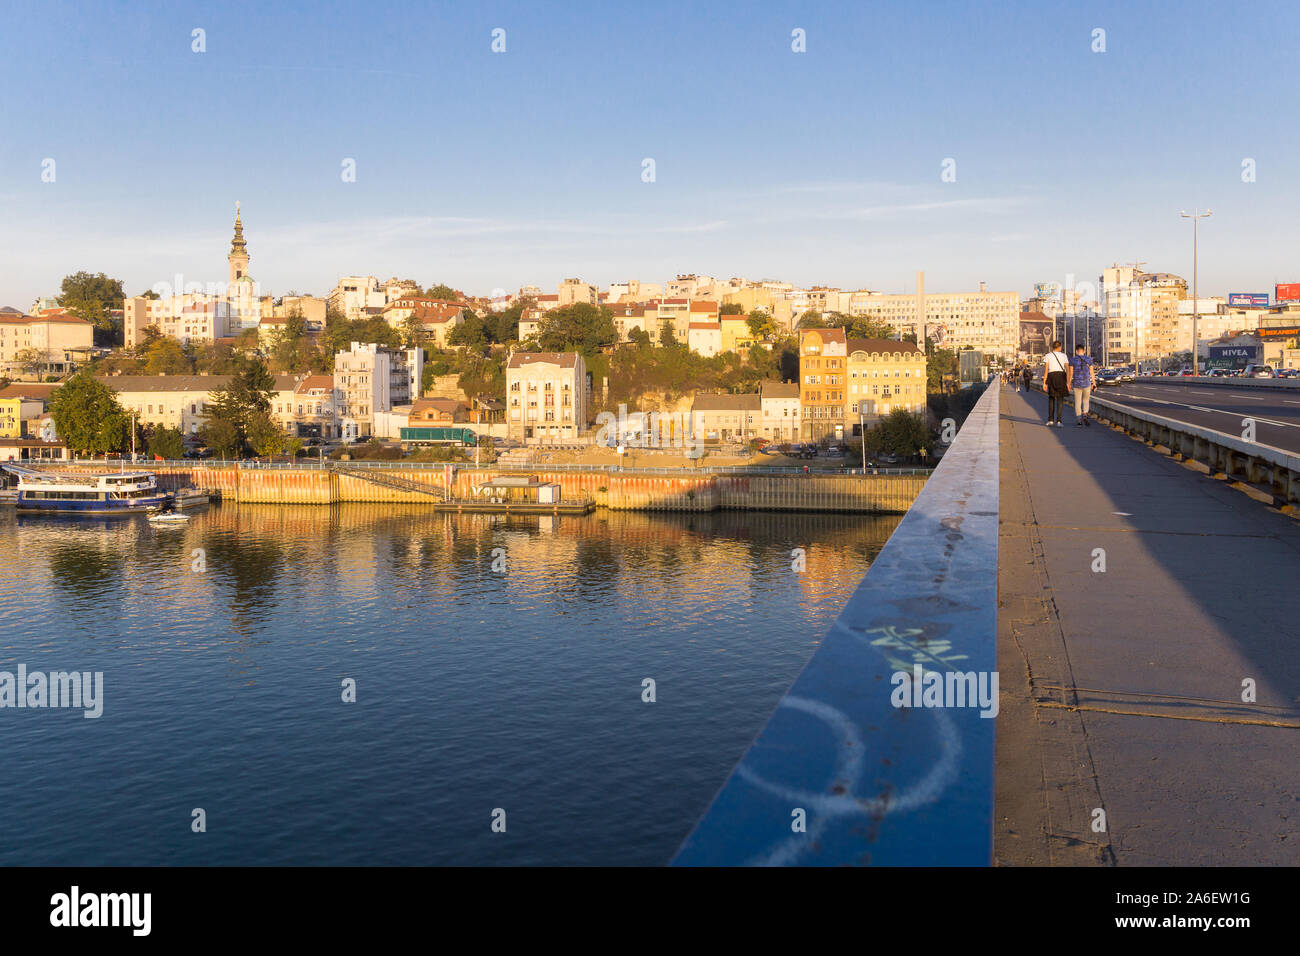 Belgrad, Serbien - Skyline von alten Belgrad vom Branko Brücke am späten Nachmittag gesehen. Serbien, Europa. Stockfoto